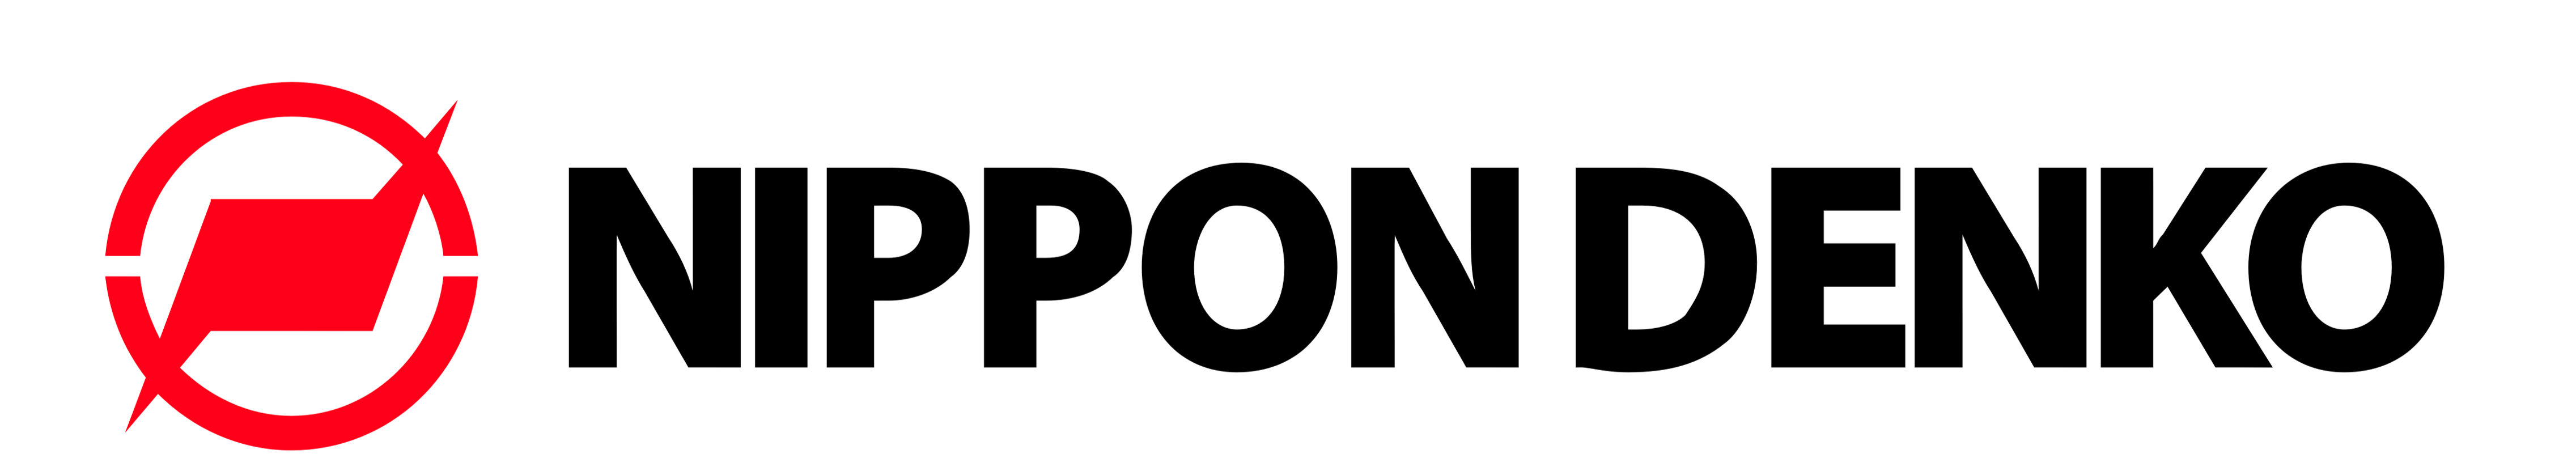 NIPPON DENKO Co., Ltd.